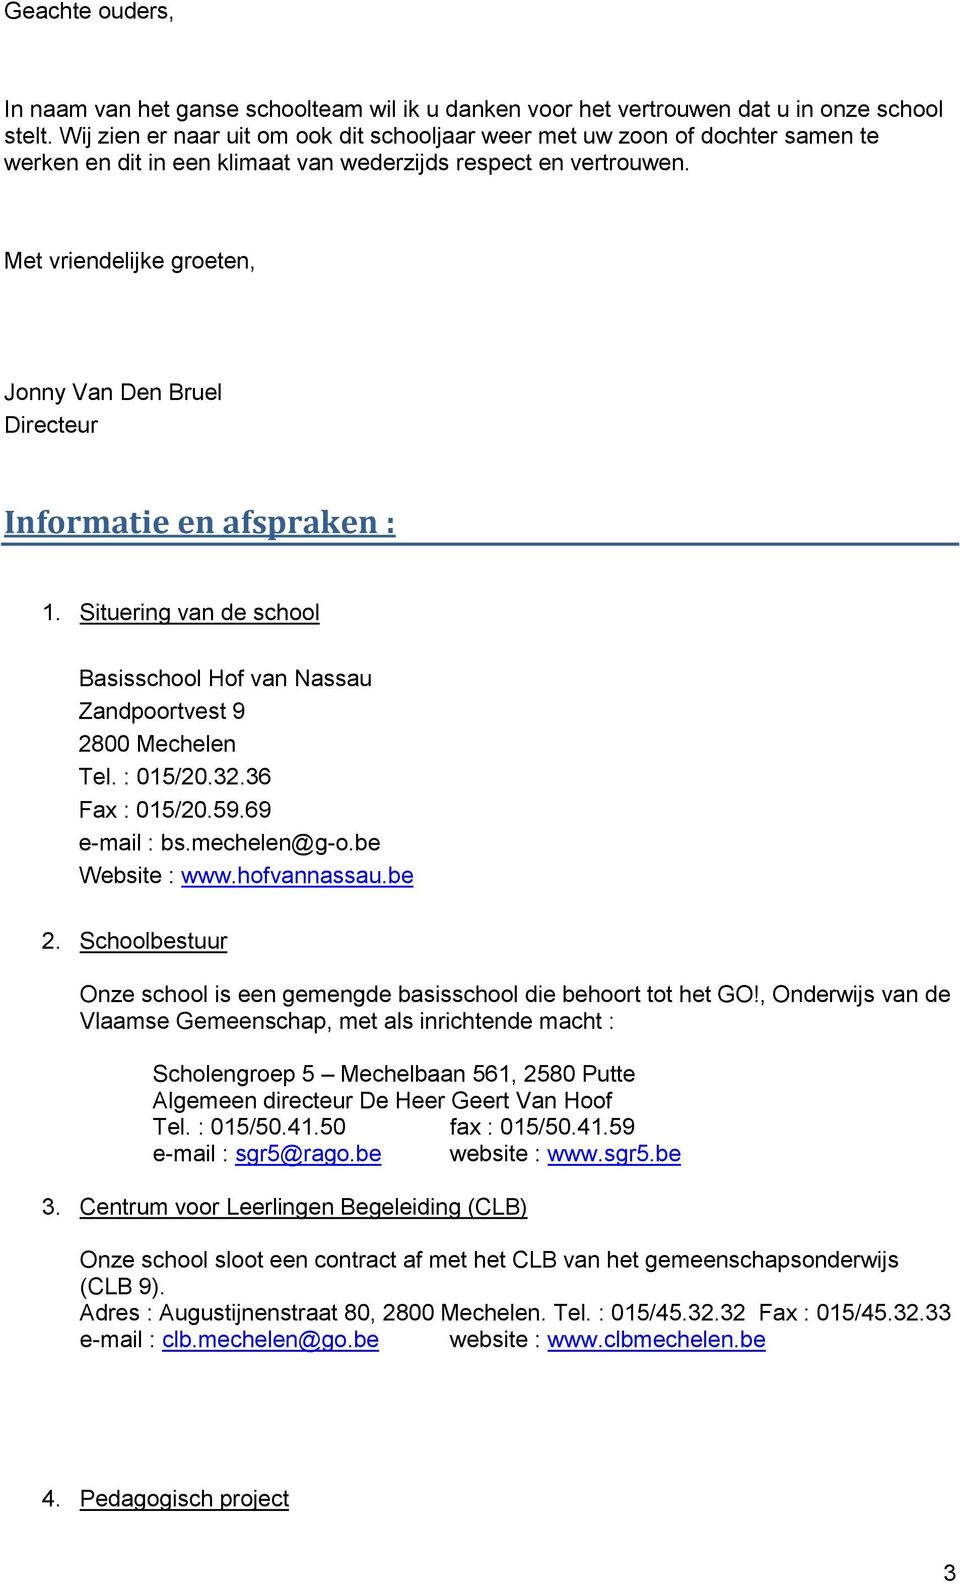 Met vriendelijke groeten, Jonny Van Den Bruel Directeur Informatie en afspraken : 1. Situering van de school Basisschool Hof van Nassau Zandpoortvest 9 2800 Mechelen Tel. : 015/20.32.36 Fax : 015/20.